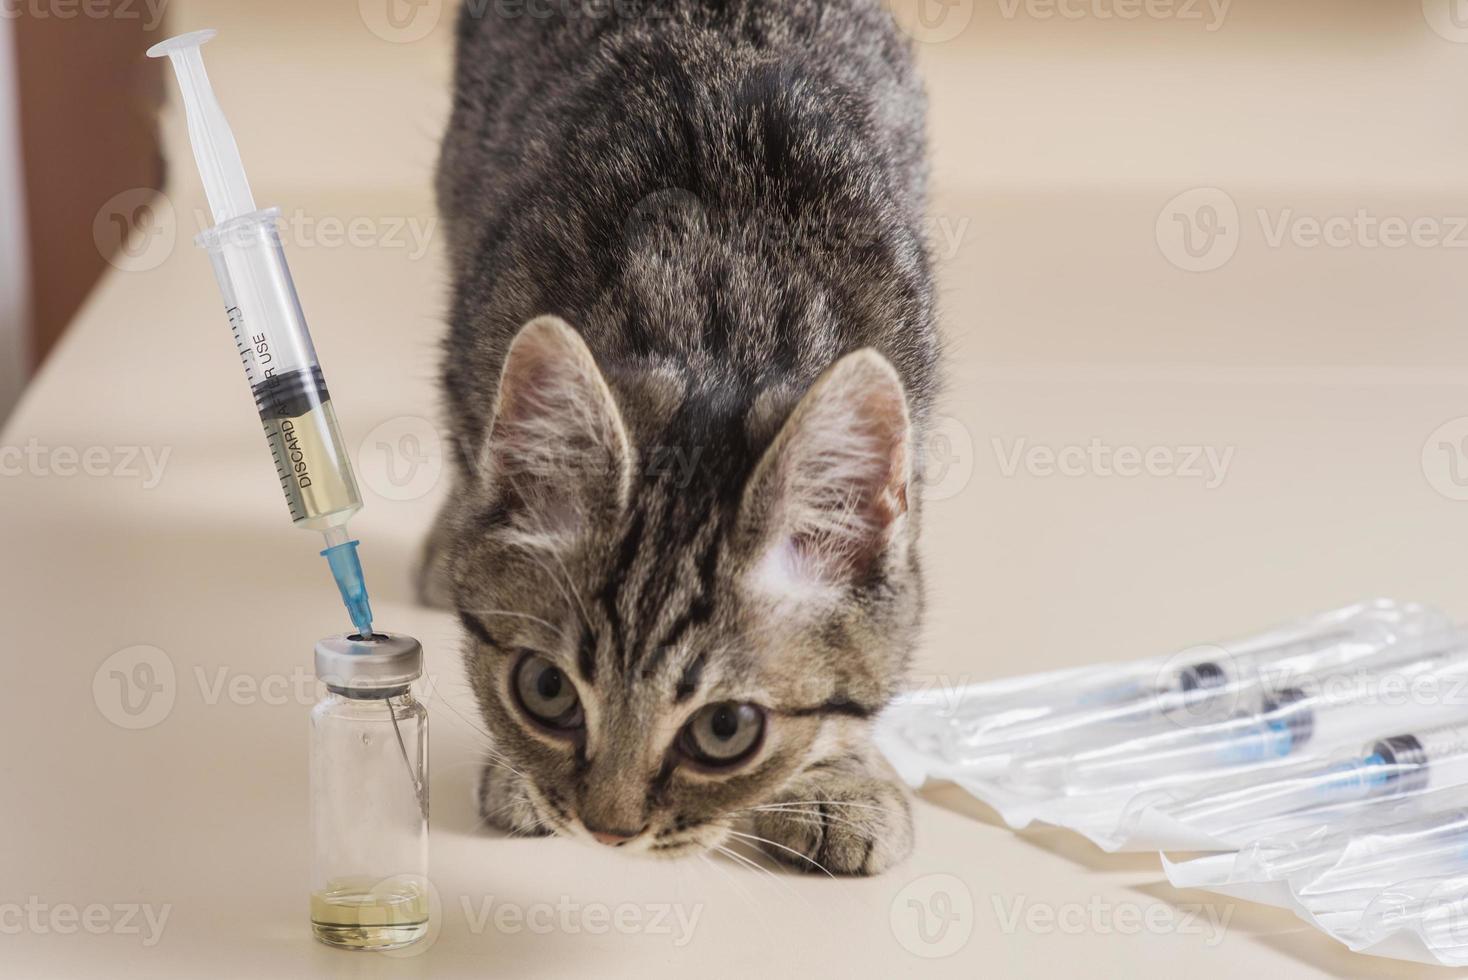 chérie, un chat drôle joue avec une seringue médicale. vaccination des chats. vaccination vétérinaire pour les animaux. photo